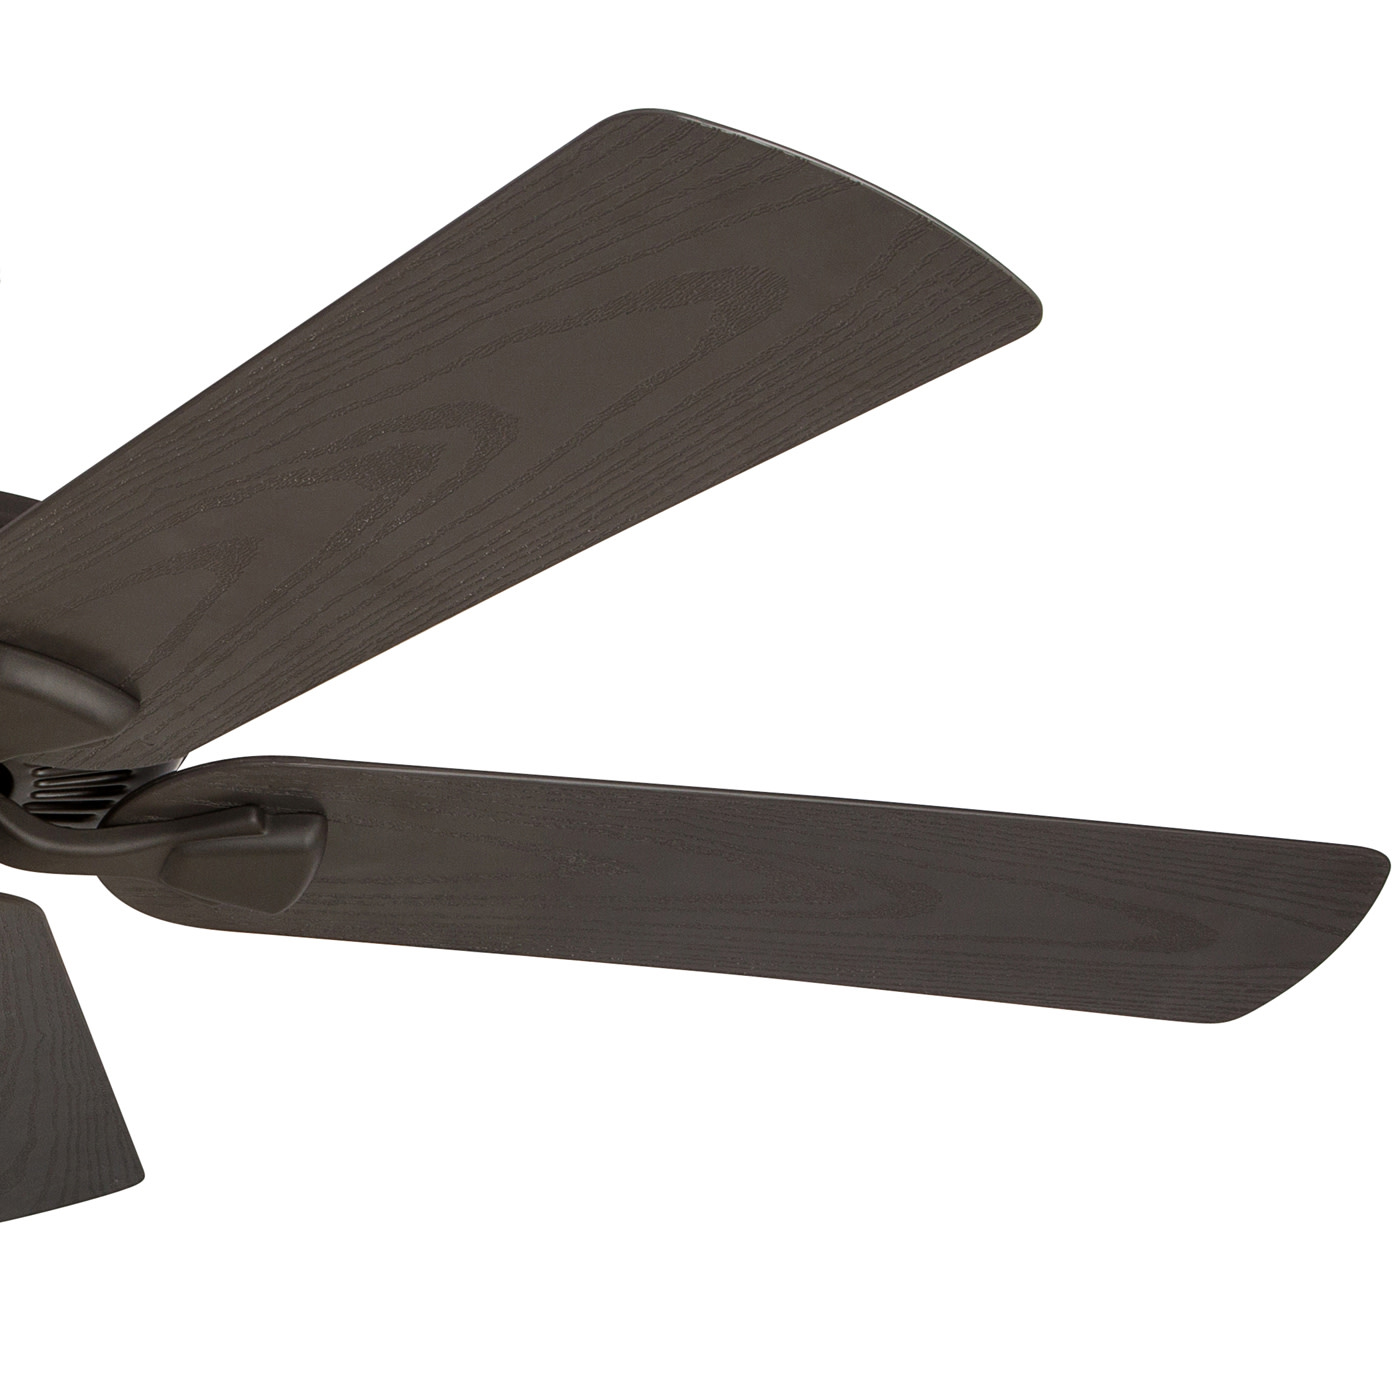 Honeywell 50199 Belmar 52 Inch Five Blade Indoor Outdoor Ceiling Fan Bronze for sale online